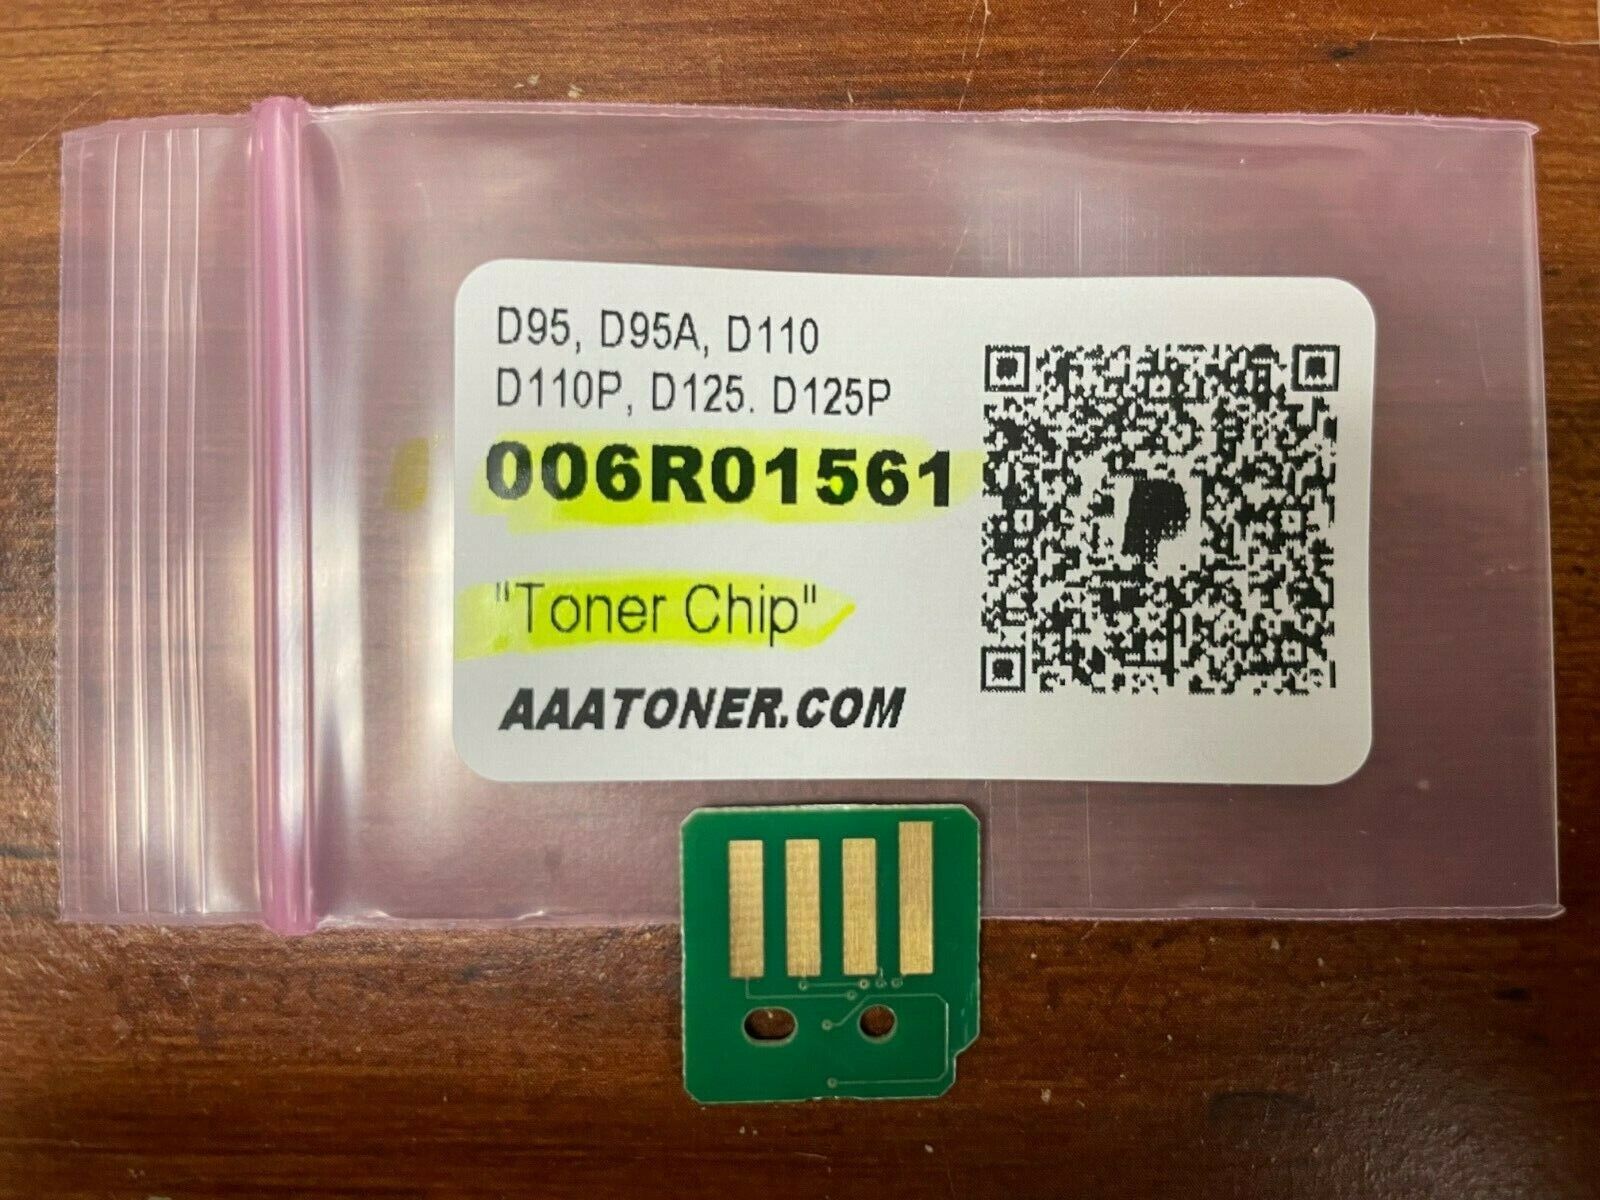 Toner Chip for Xerox D95, D95A, D110, D110P, D125. D125P (006R01561) Refill